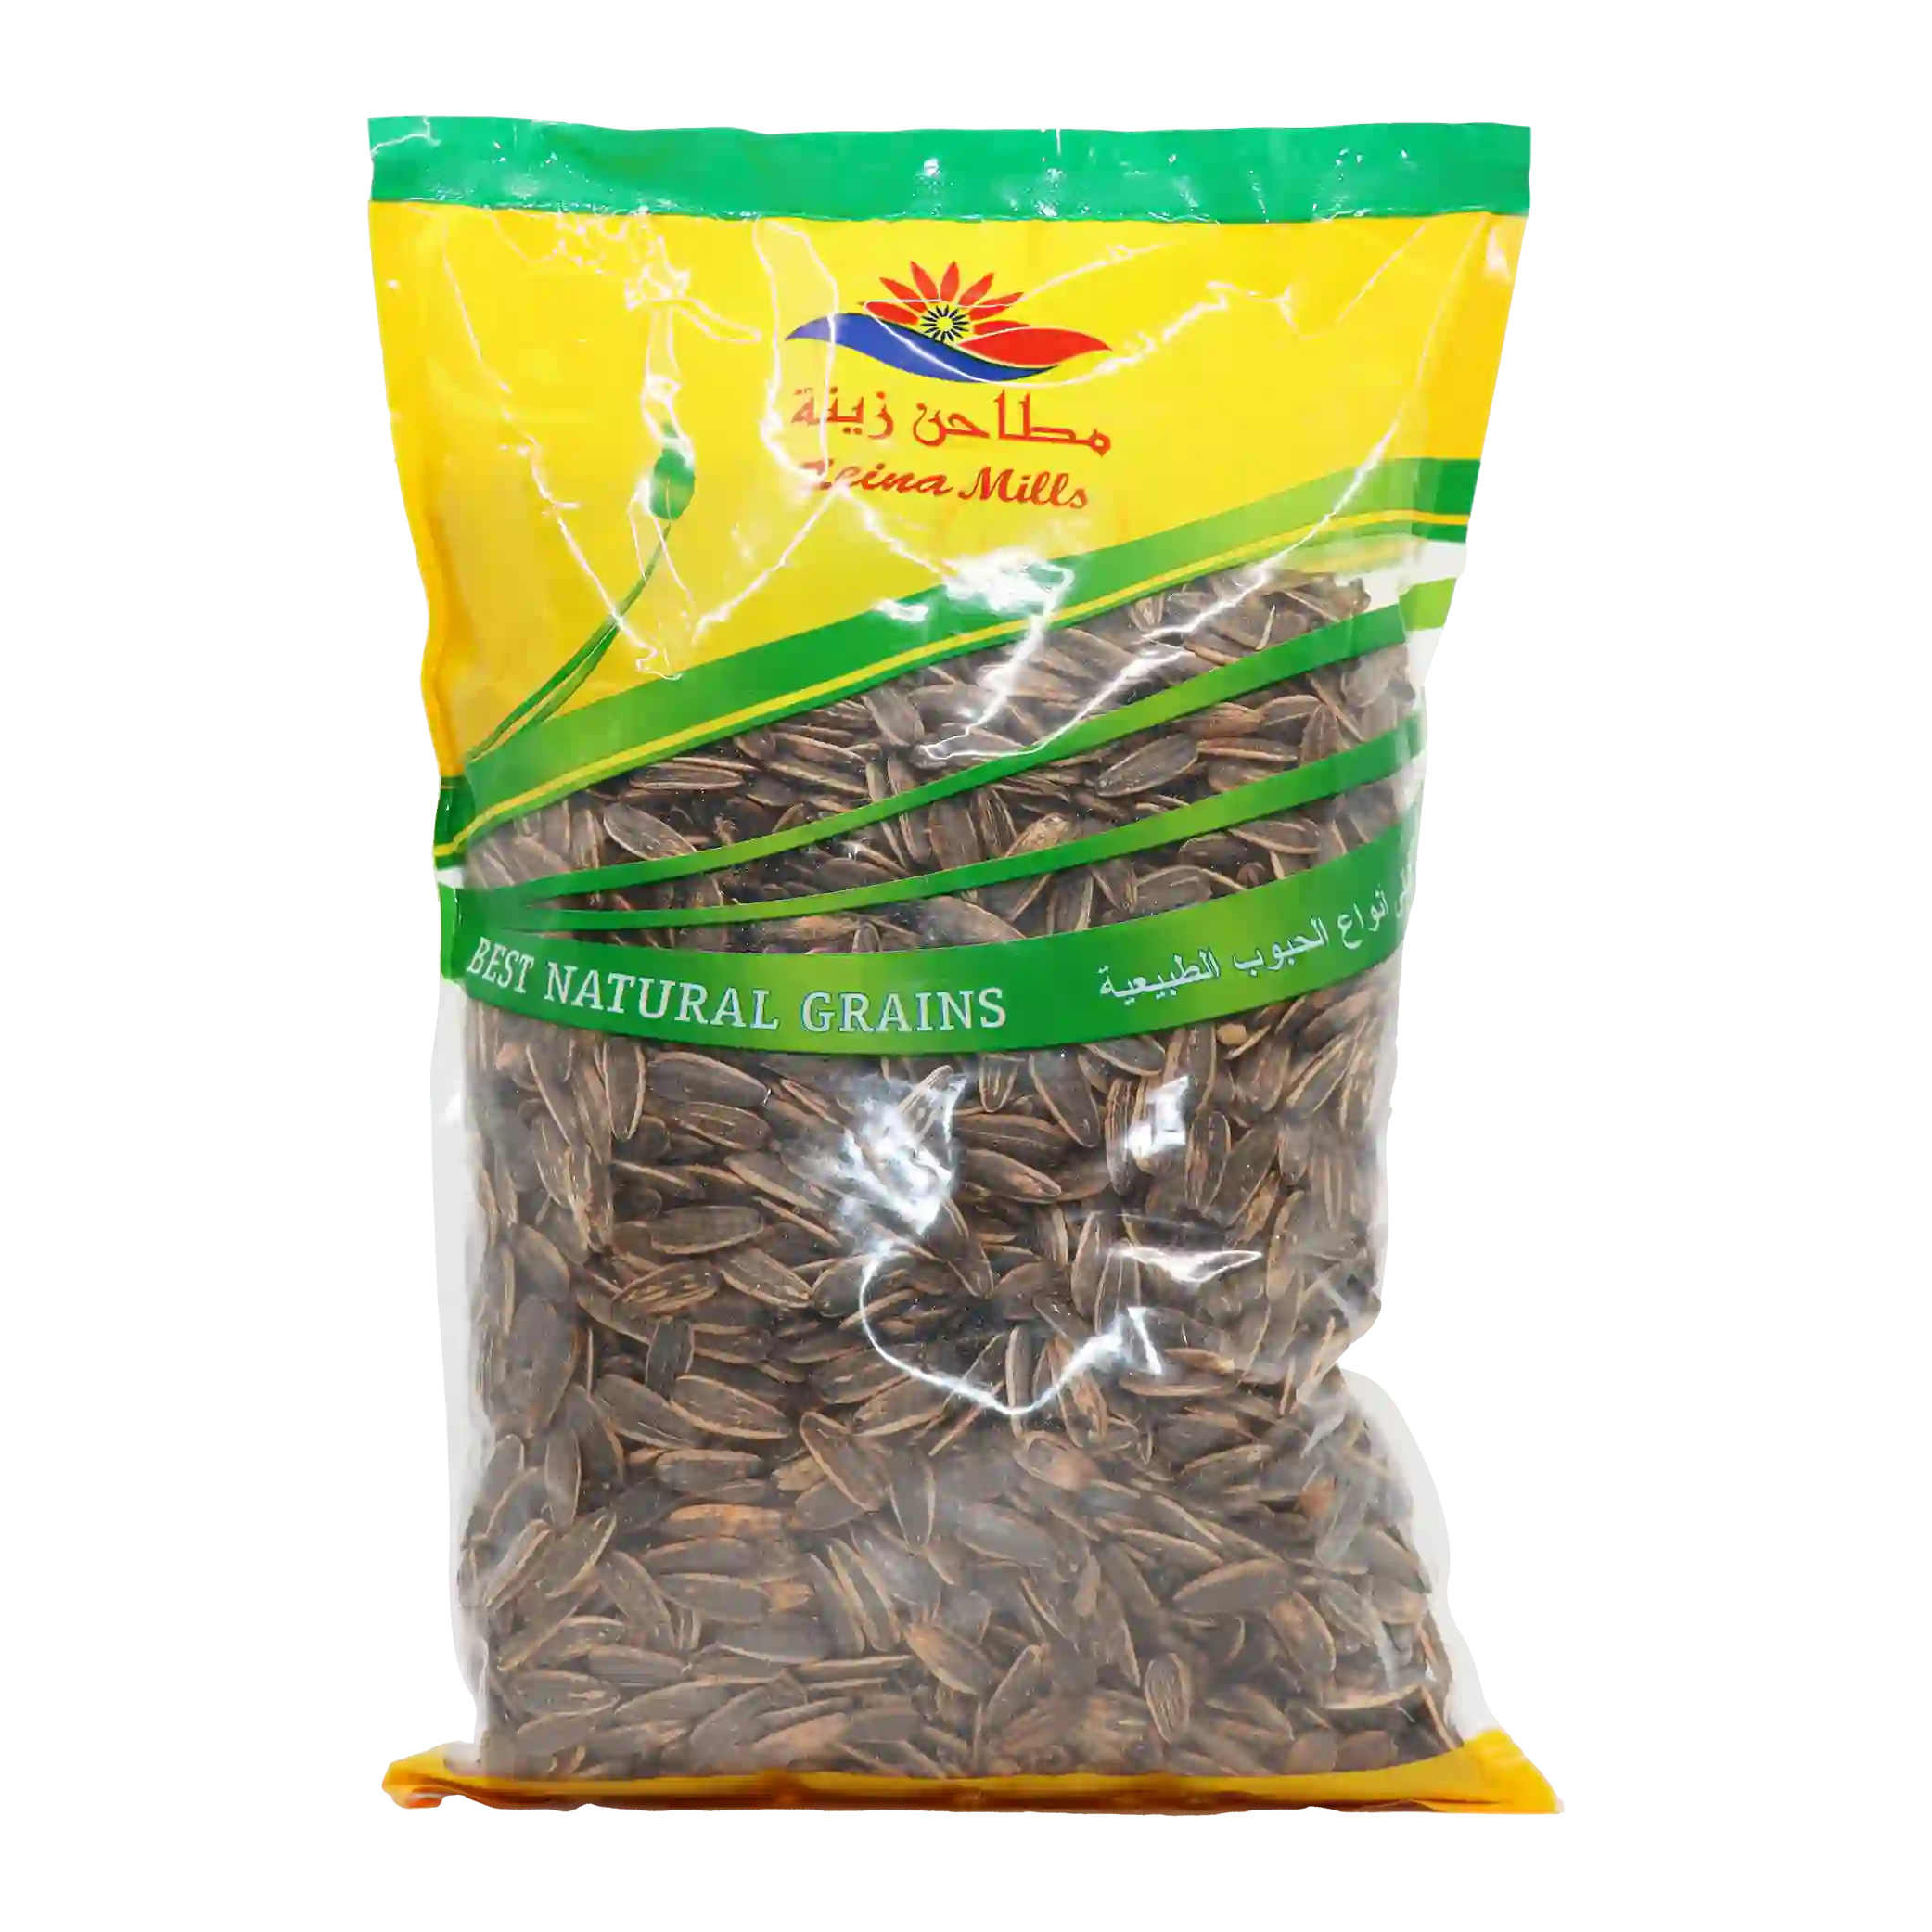 KAC - Smoked sunflower seeds - 1 kilo